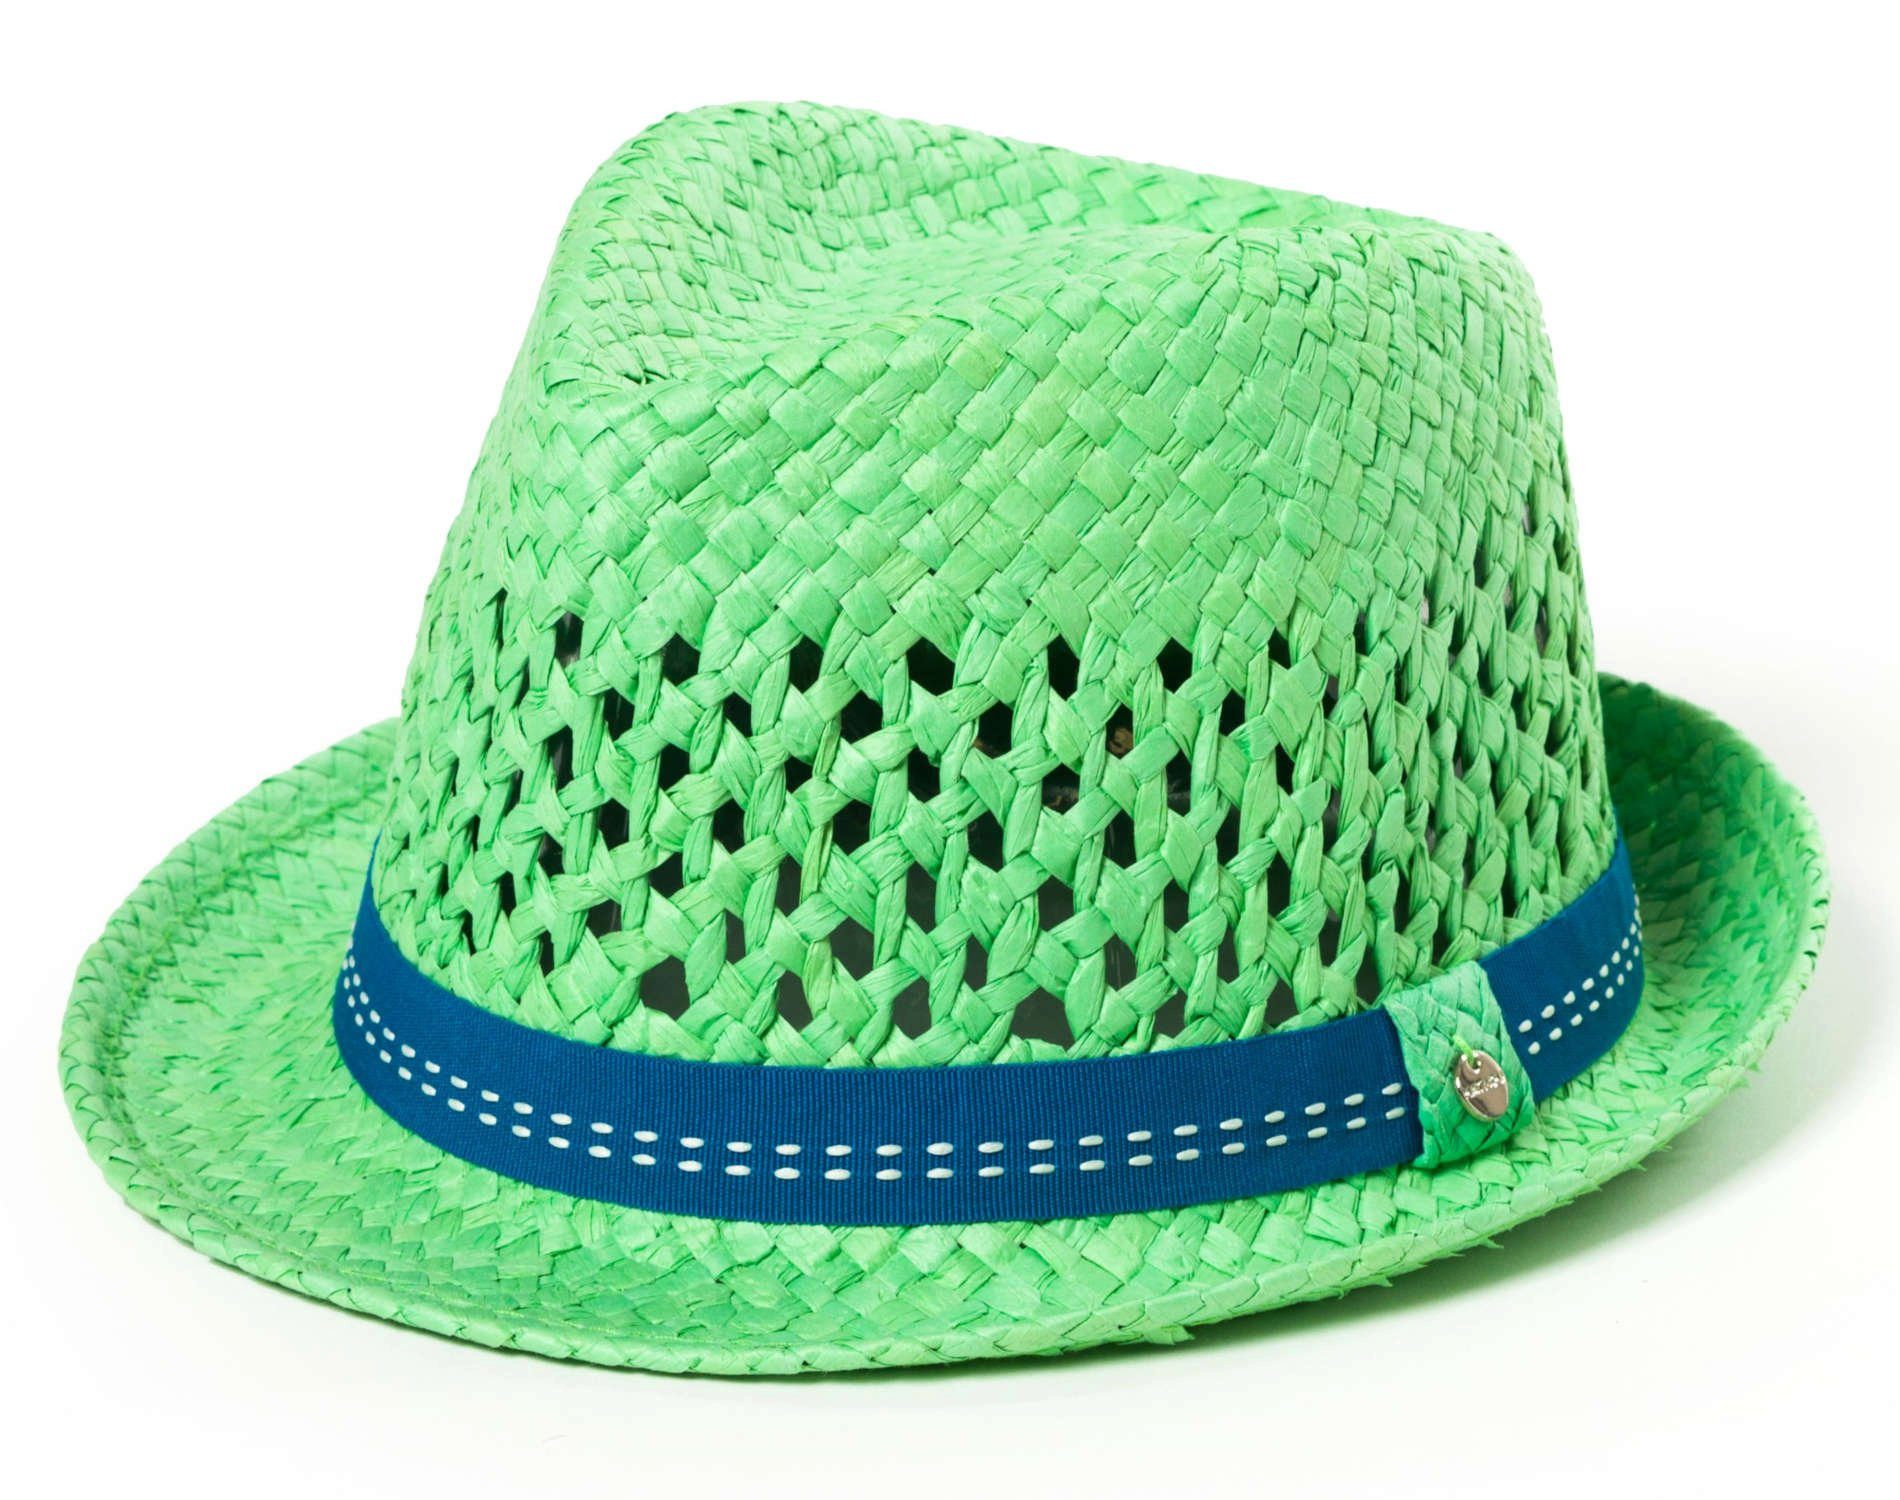 Grün You in 100% Hat farbenfrohen YOU HAT aus Papier. Farben Kinderhut Sonnenhut